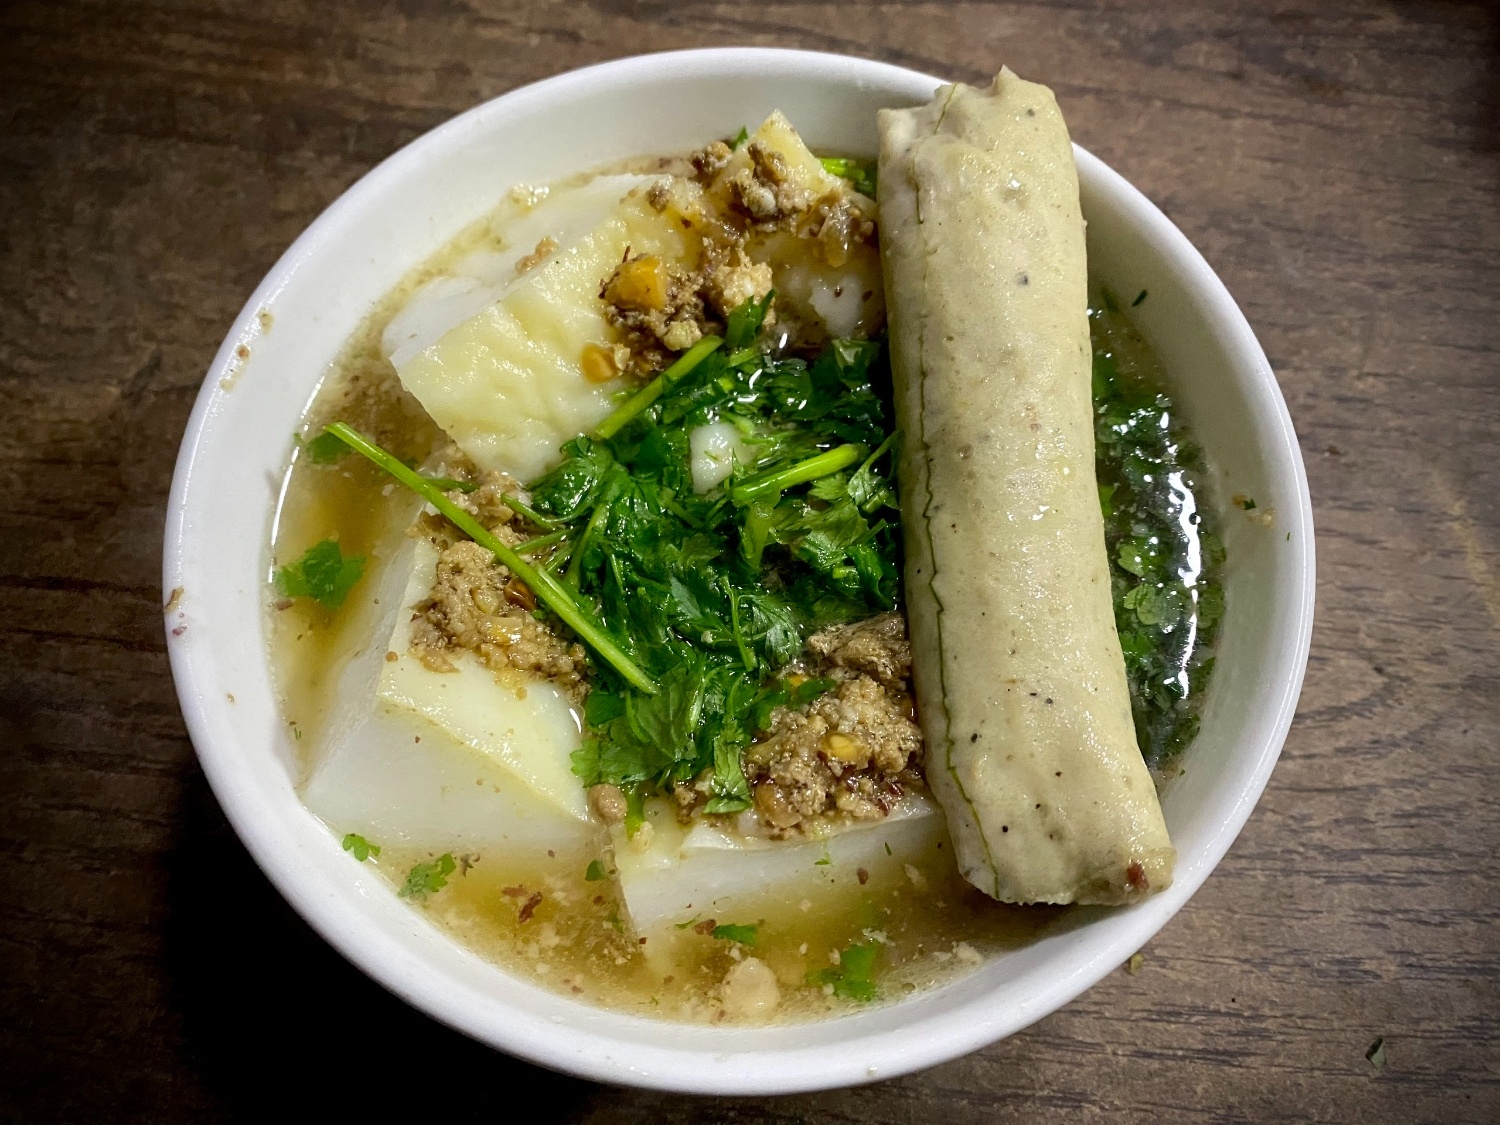 Thành phố Cao Bằng, nơi “trăm món ăn vặt đều ngon"